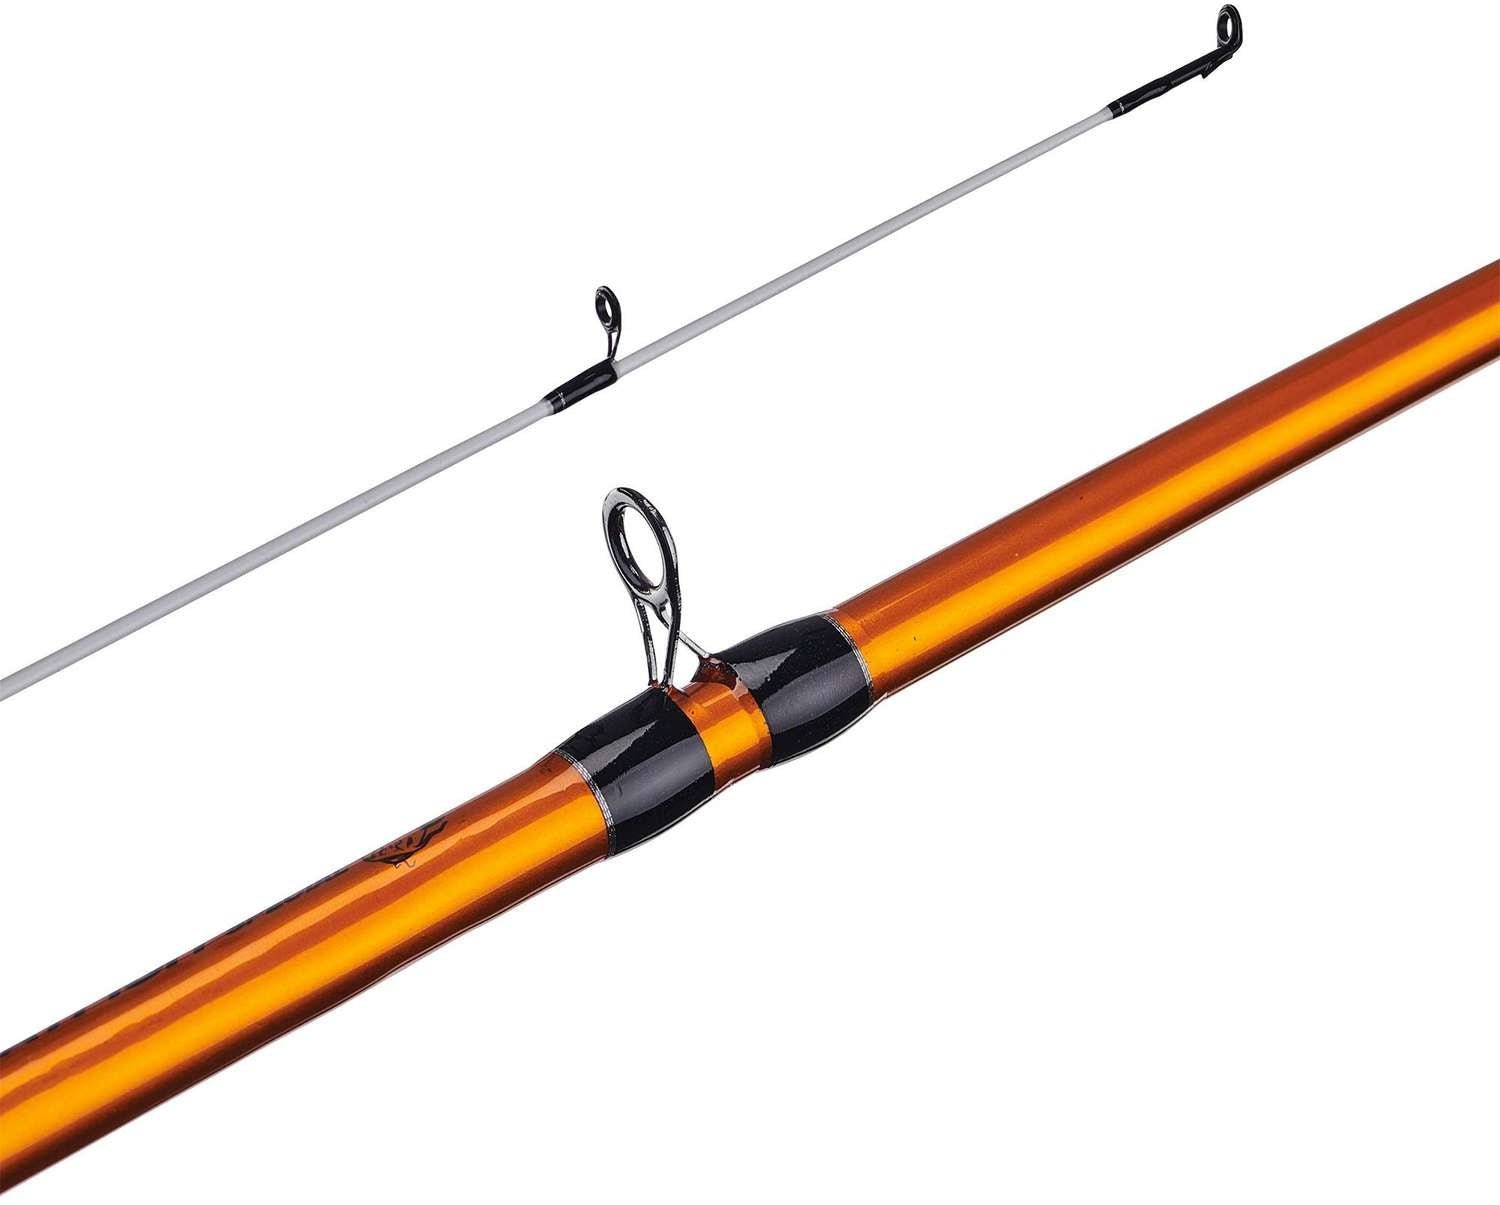 Ugly Stik Catfish Orange Casting Rod - 7' MH - Hamilton Bait and Tackle